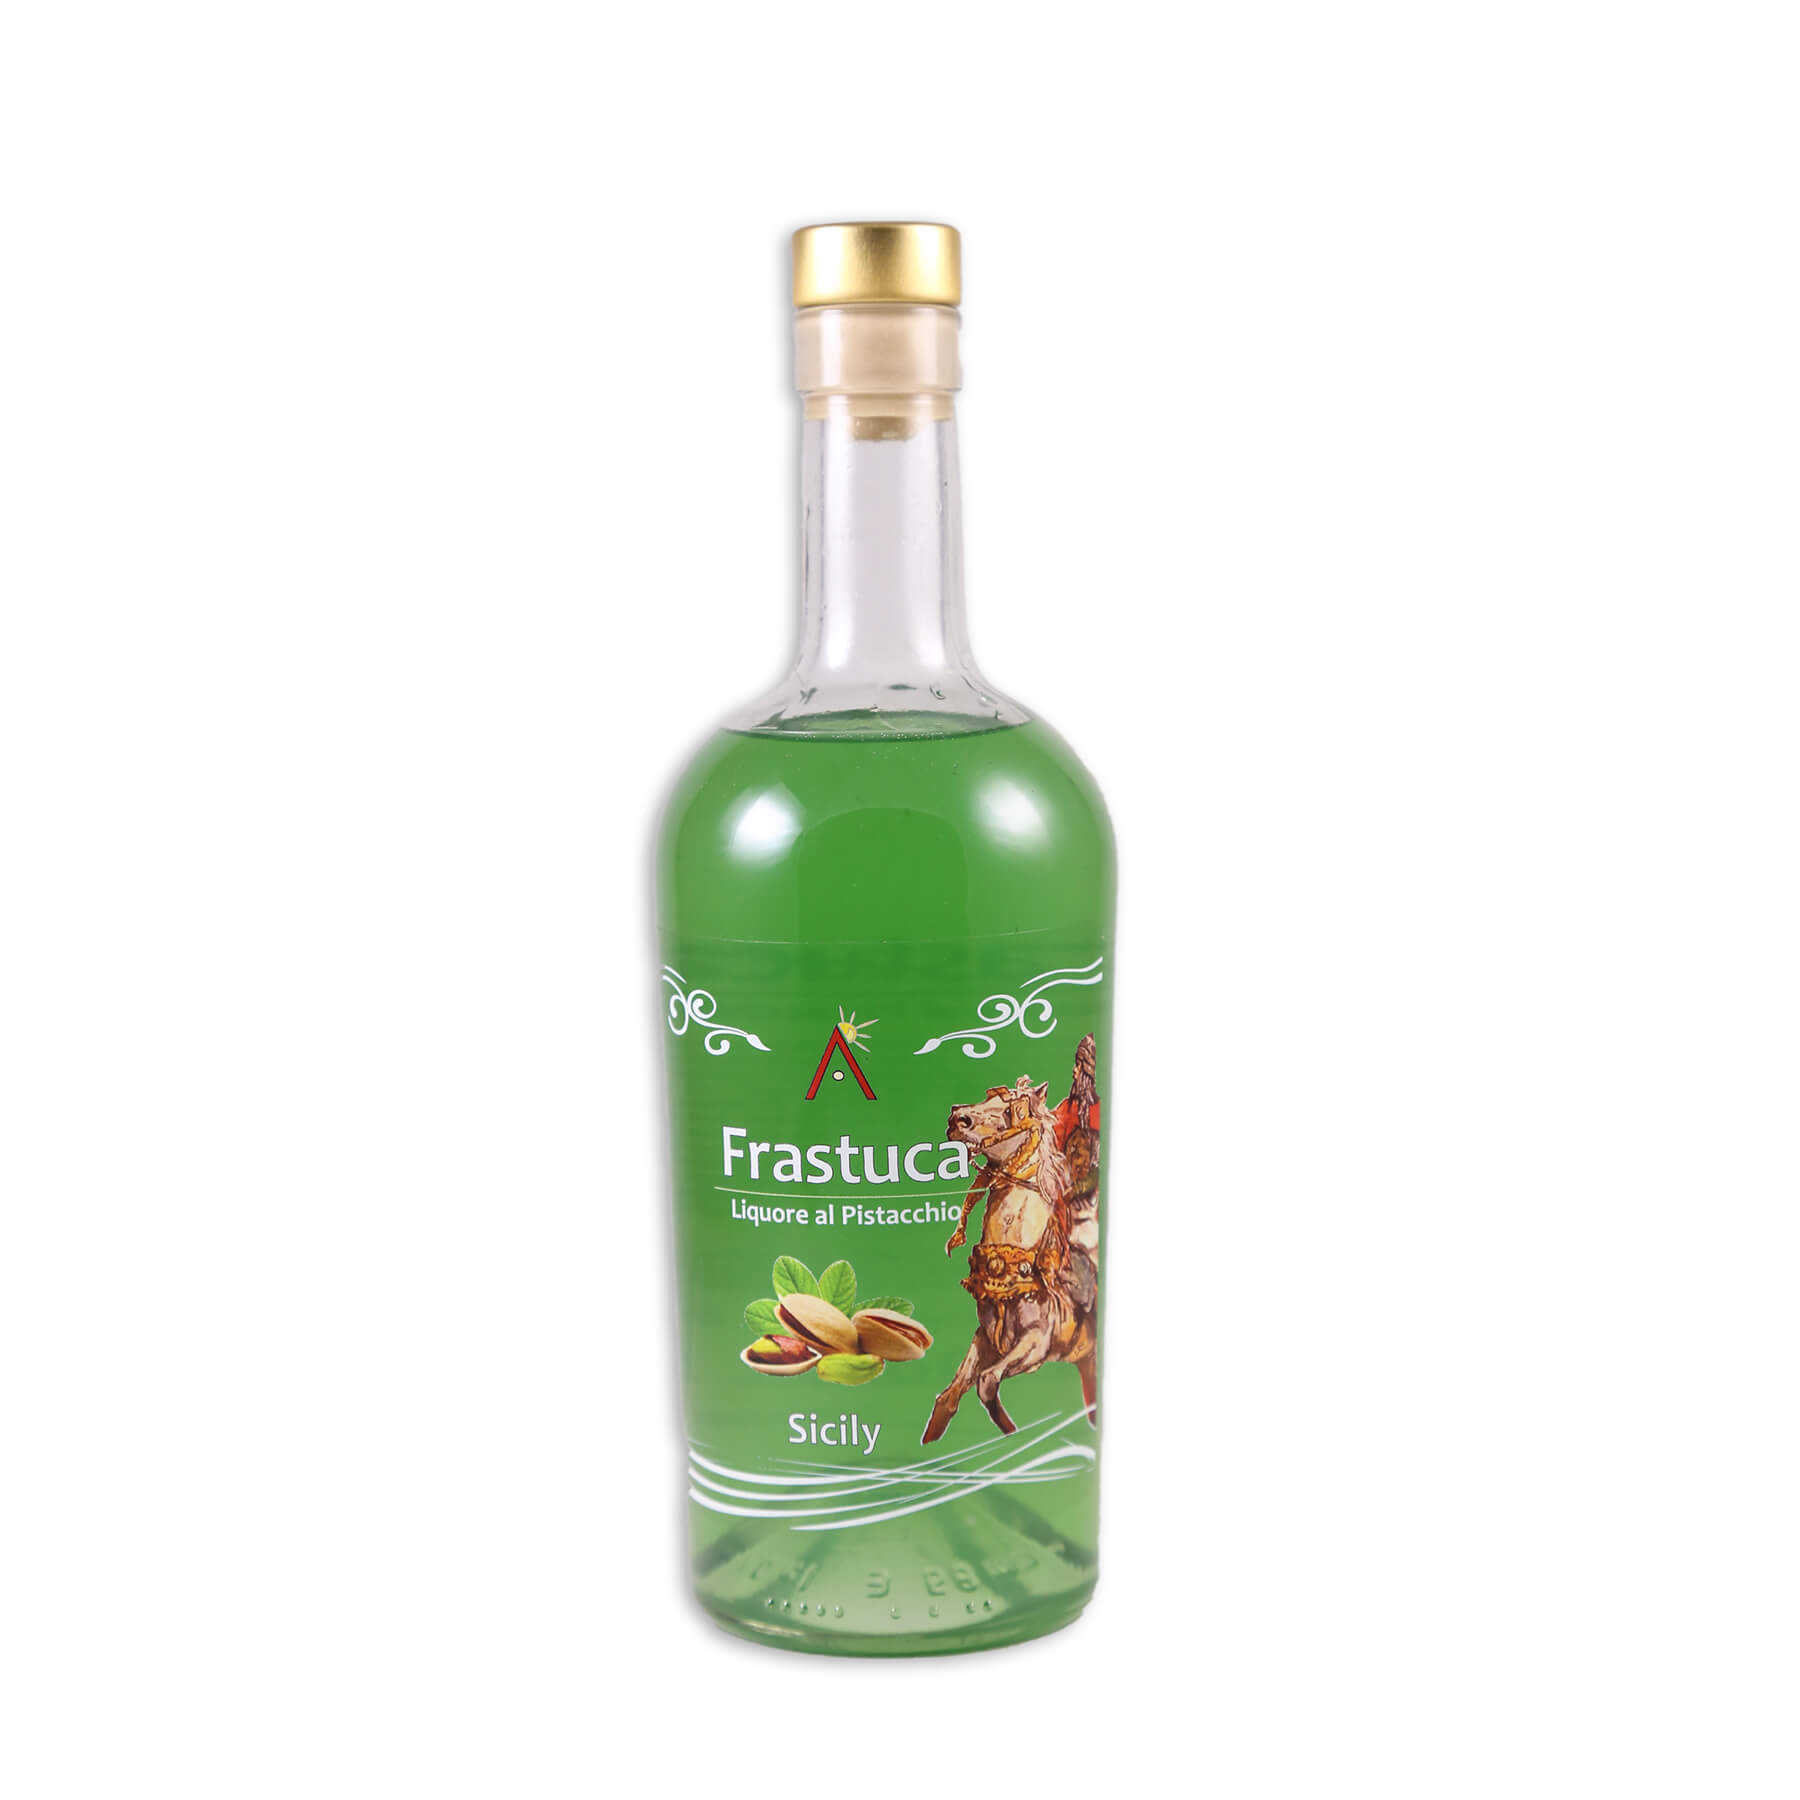 Mr.Bontà - Frastuca - Liquore al pistacchio